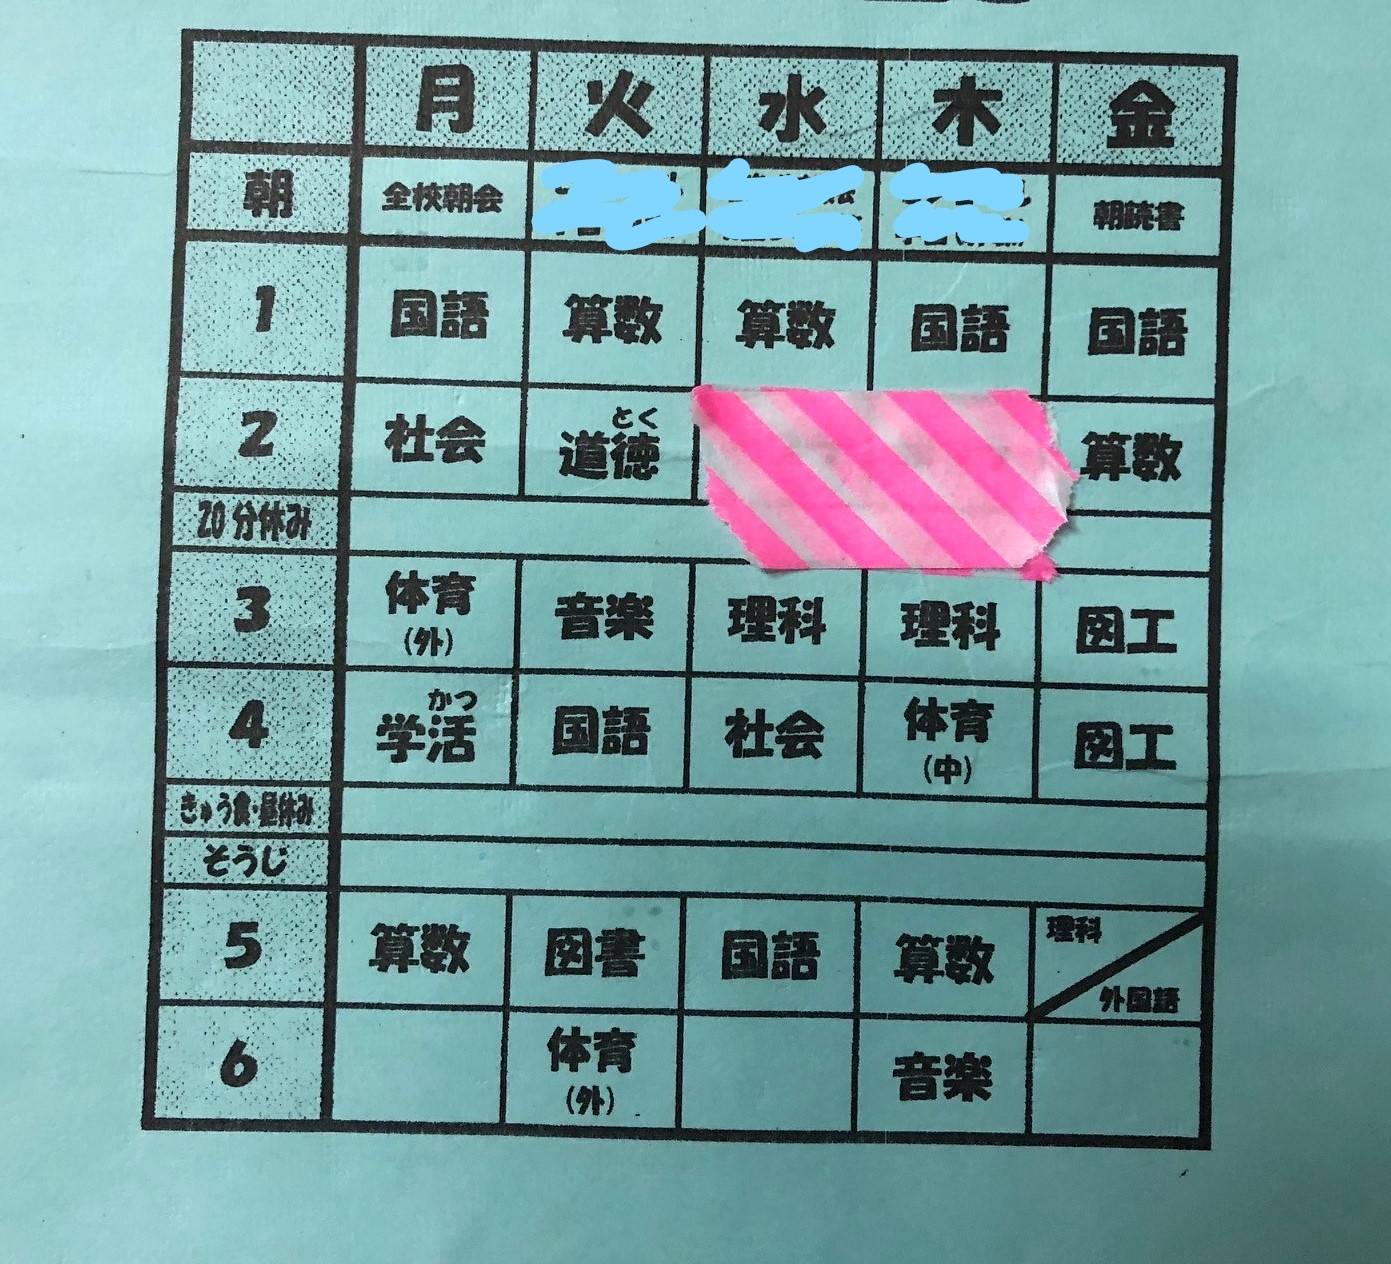 小学3年生の時間割 漢字検定８級 英検５級合格の勉強方法 読書